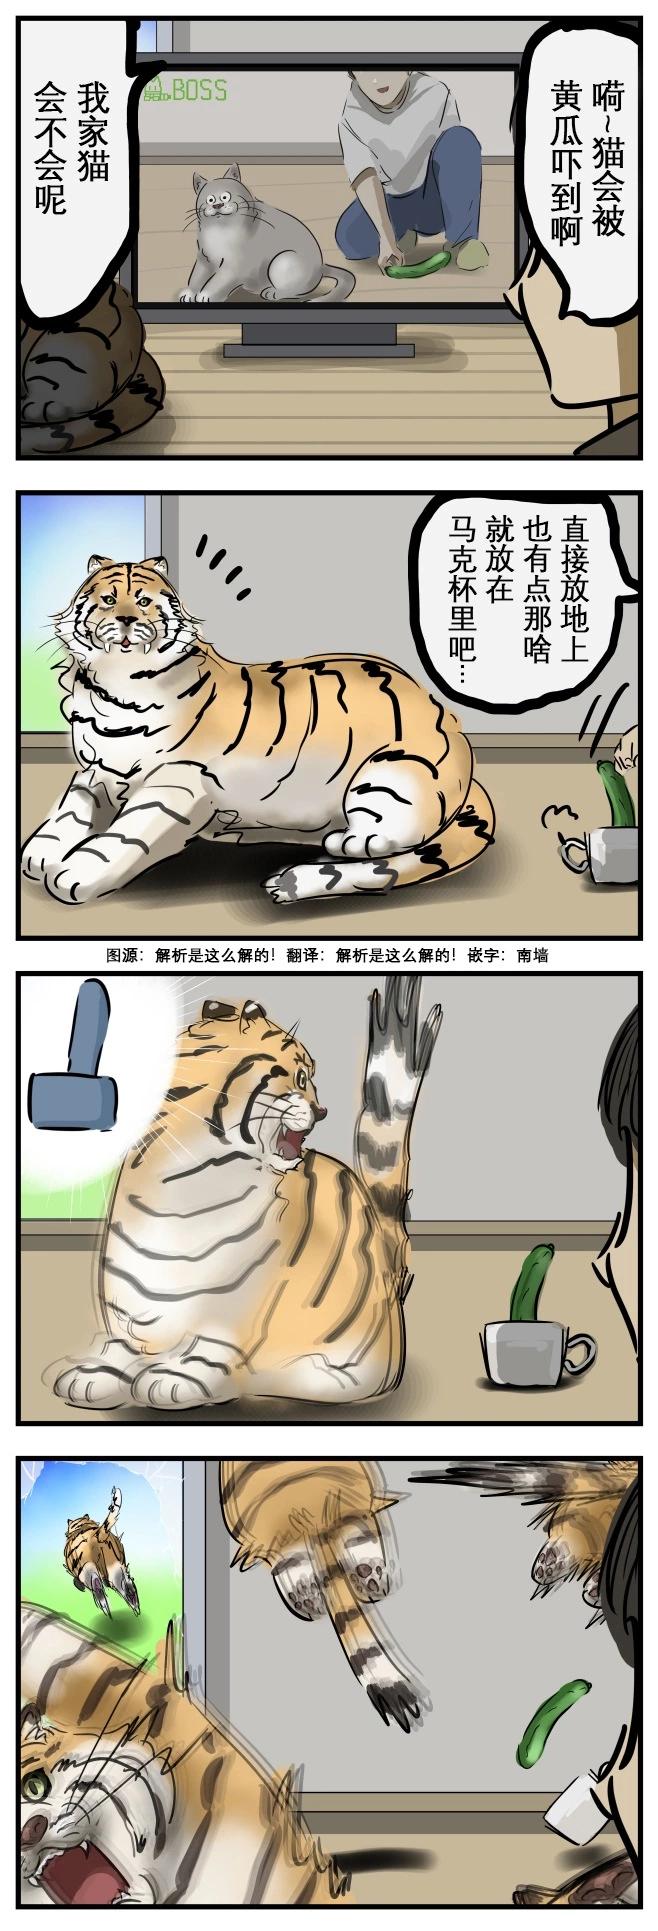 カコミスル老師四格合集 - 受驚的貓2 - 1